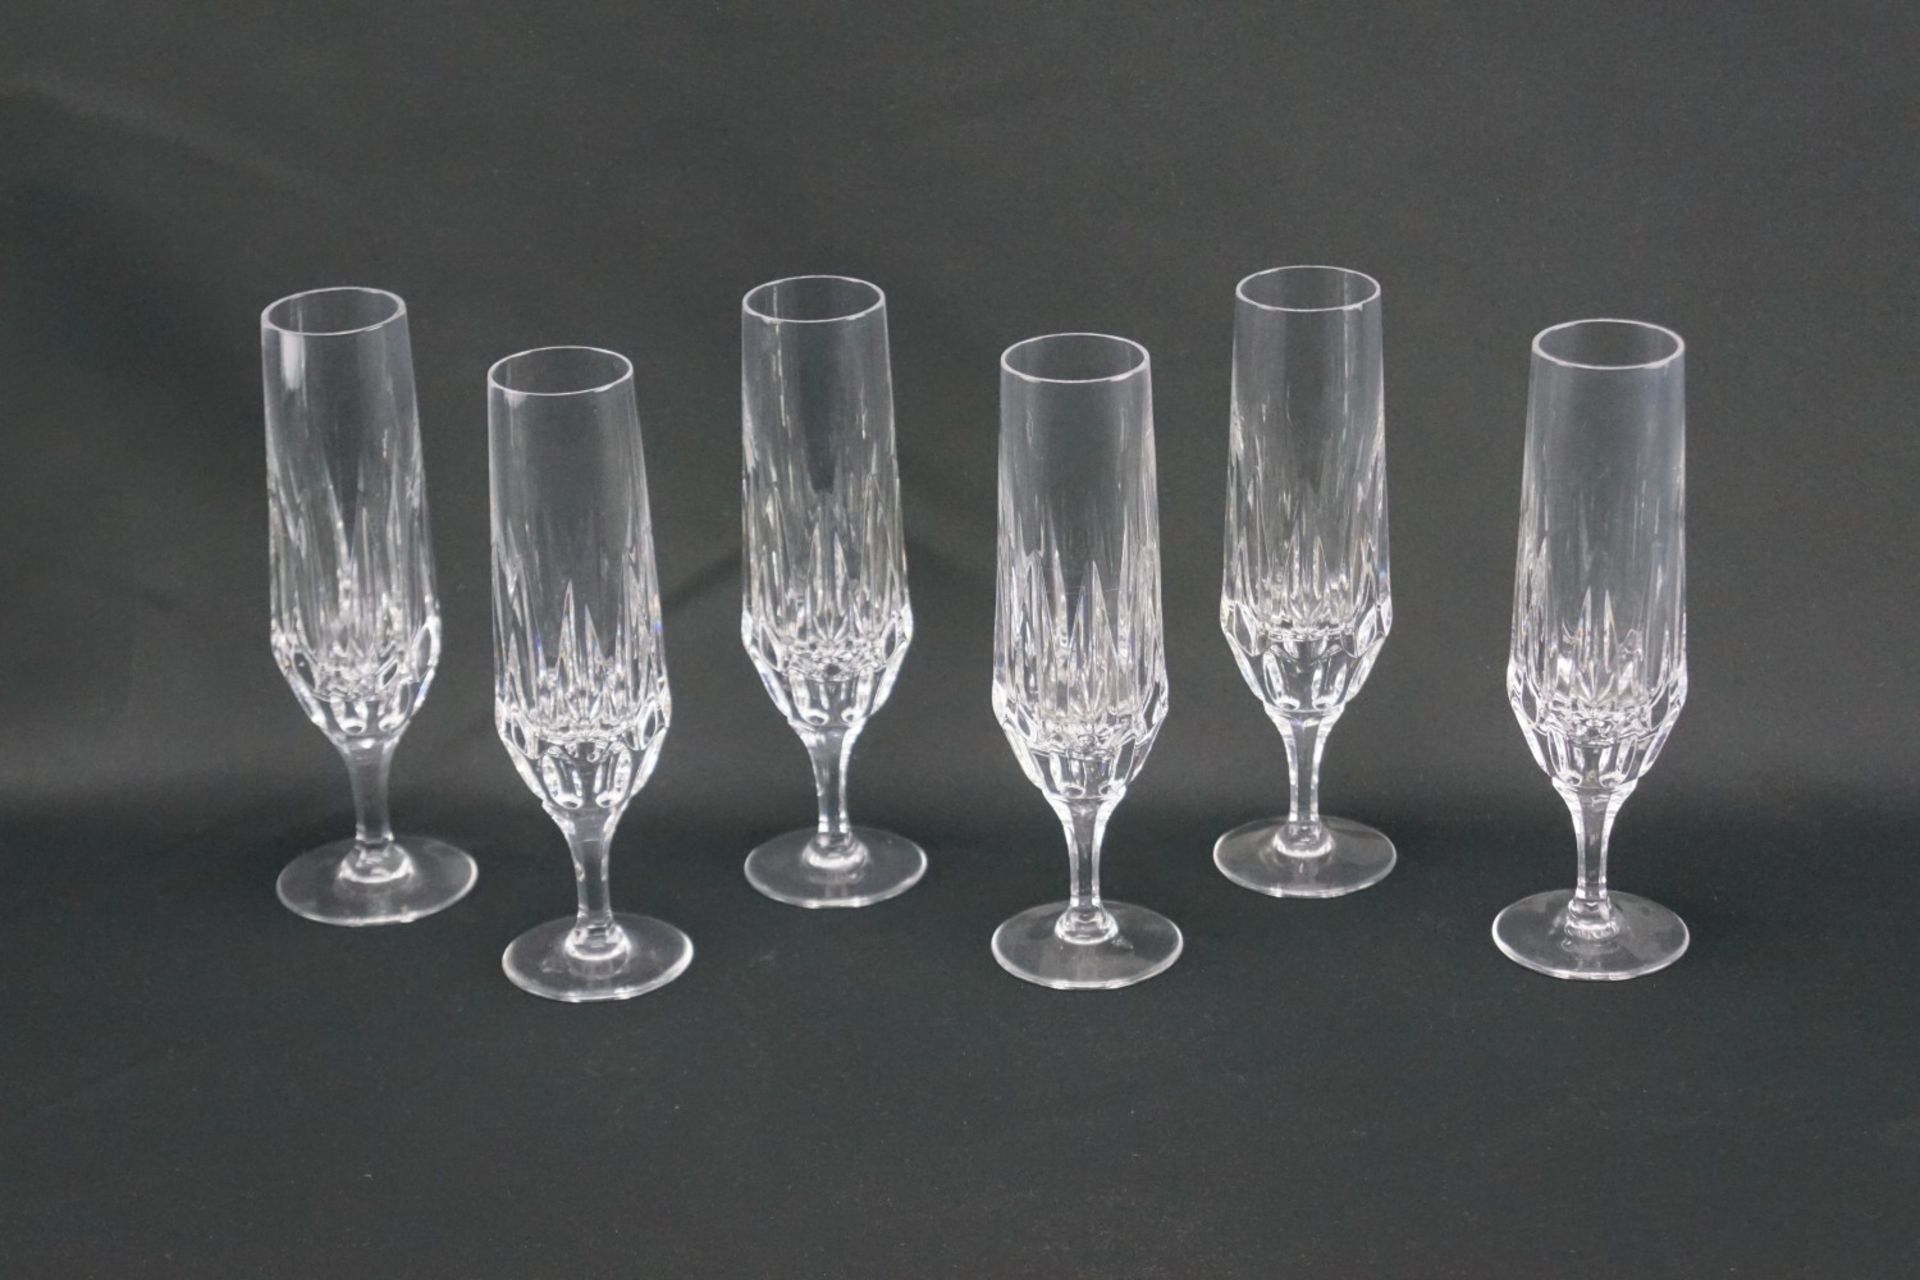 Sechs Sektflöten aus KristallglasKristallglas, Höhe der Gläser 19 cm und Durchmesser 4 cm, in